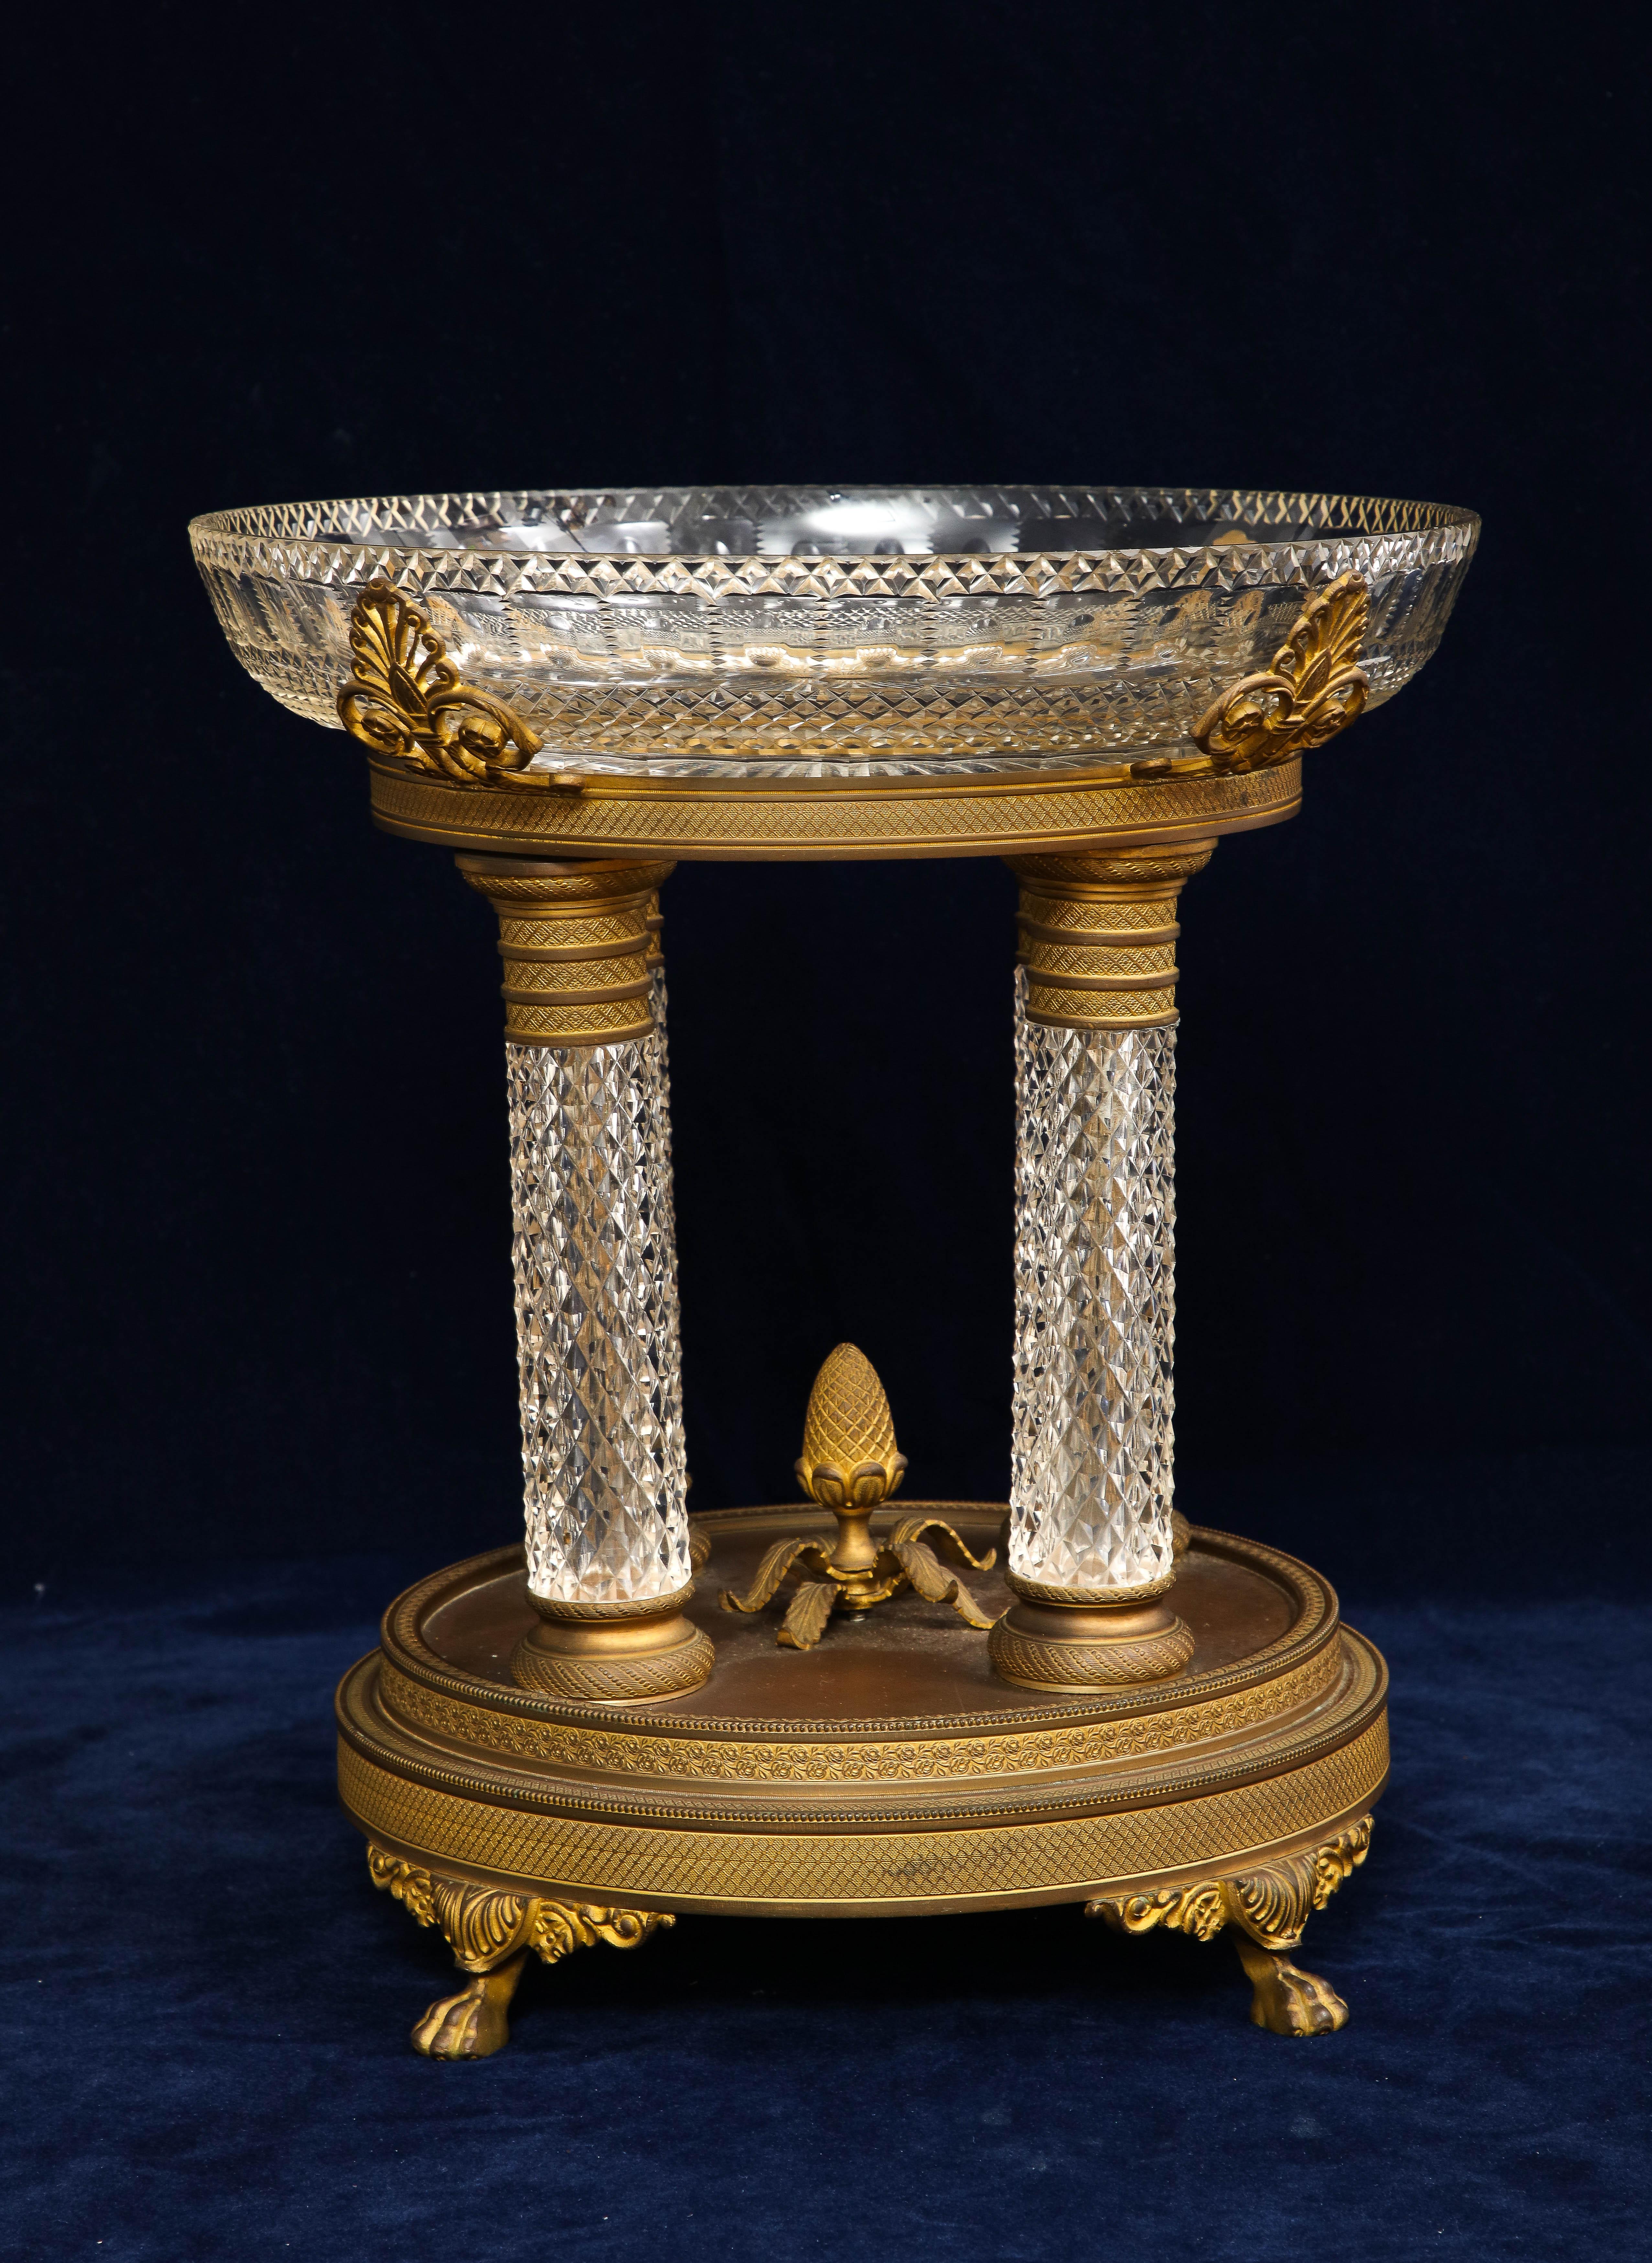 Eine wunderbare 19. Jahrhundert Französisch Louis XVI-Stil Baccarat Ormolu montiert Crystal Centerpiece mit Kristall-Säulen und Lions Paw Feet. Die Bronze ist wunderbar gehäutet, von Hand ziseliert und mit enormen Details versehen. Das Kristall ist